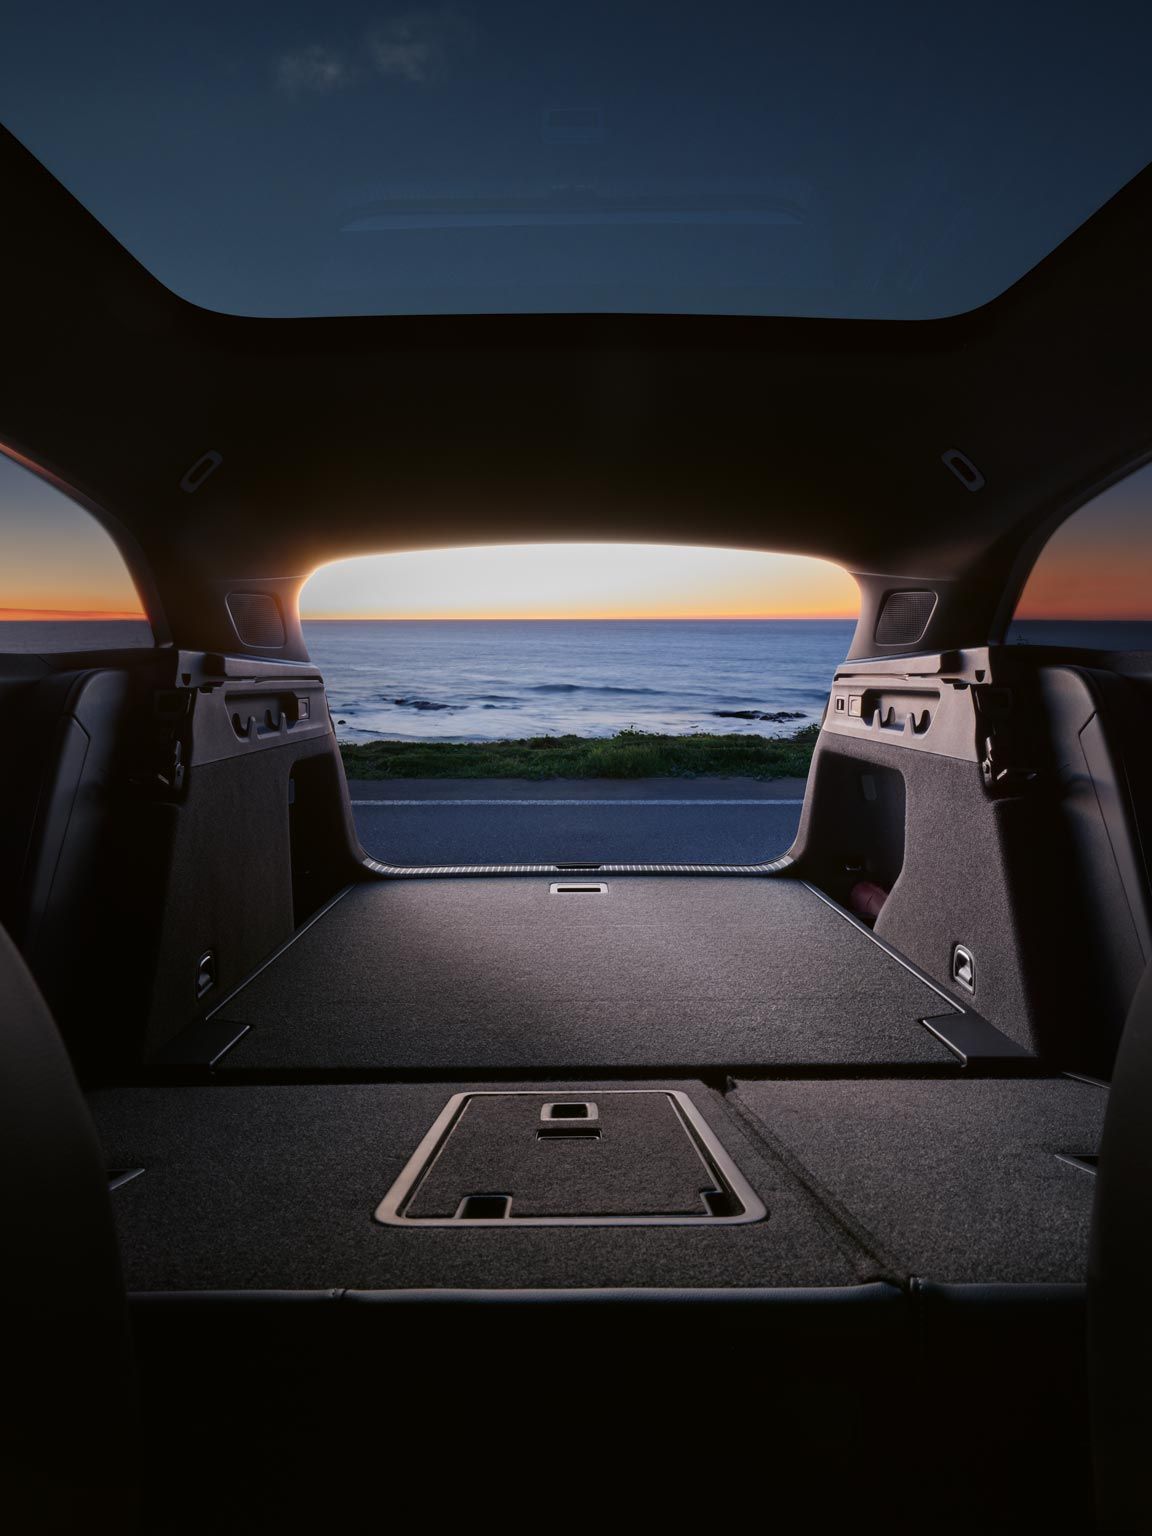 Umgeklappte Rücksitzbank und Kofferraum des VW ID.7 Tourer, im Hintergrund das Meer und ein Sonnenuntergang